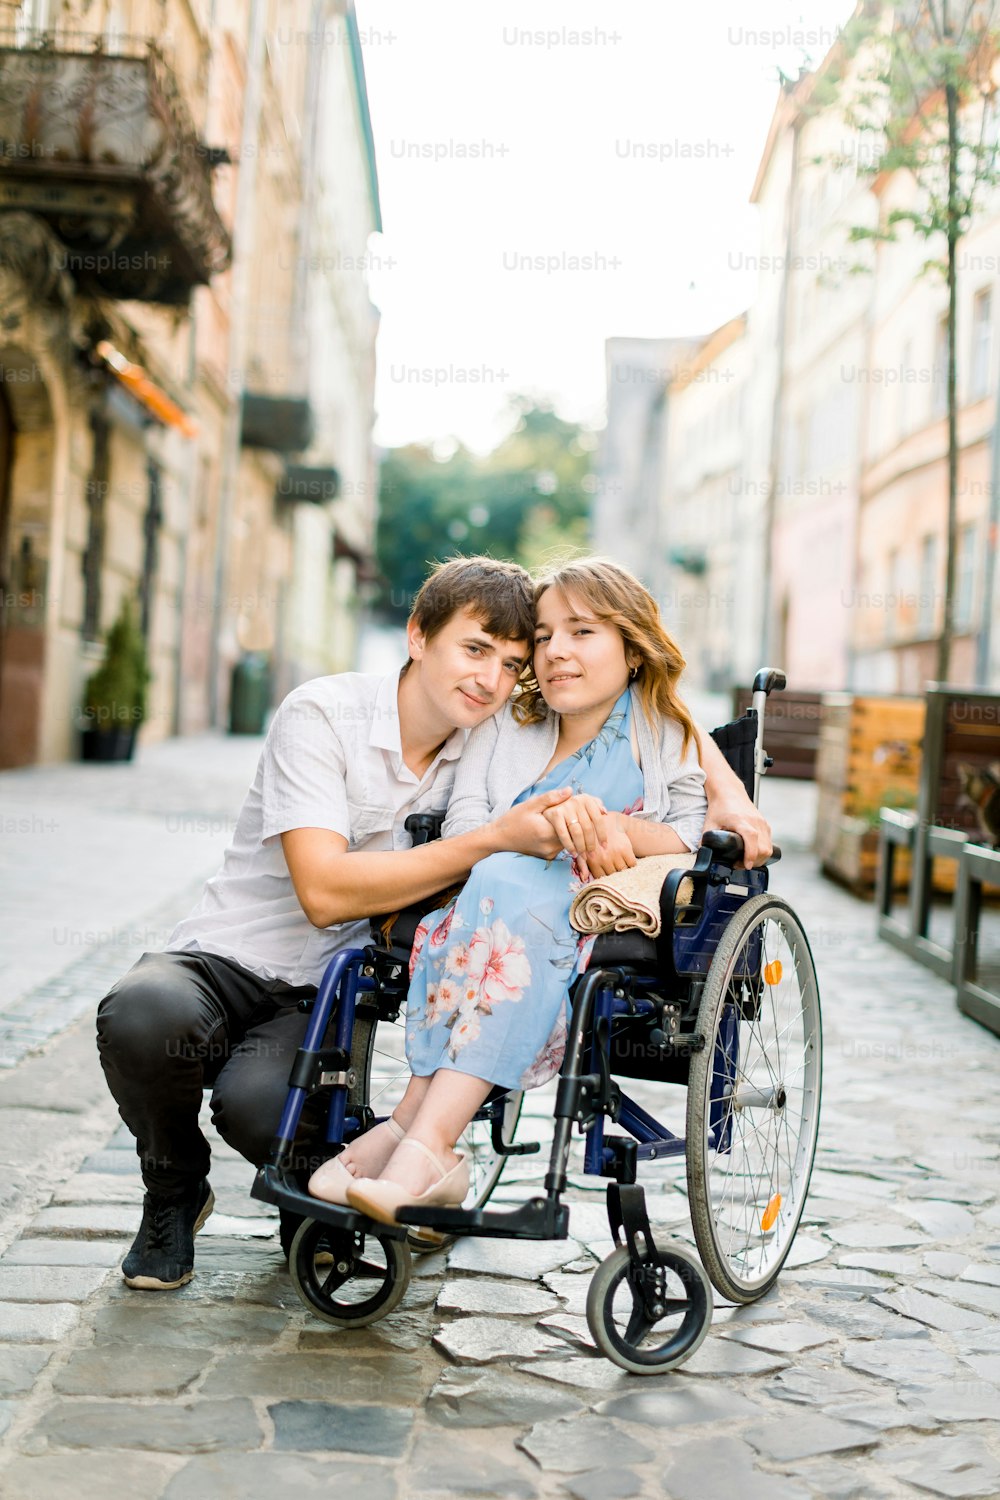 Mulher sorridente muito jovem na cadeira de rodas e homem bonito olhando para a câmera, de mãos dadas, apaixonado, andando no centro da cidade velha